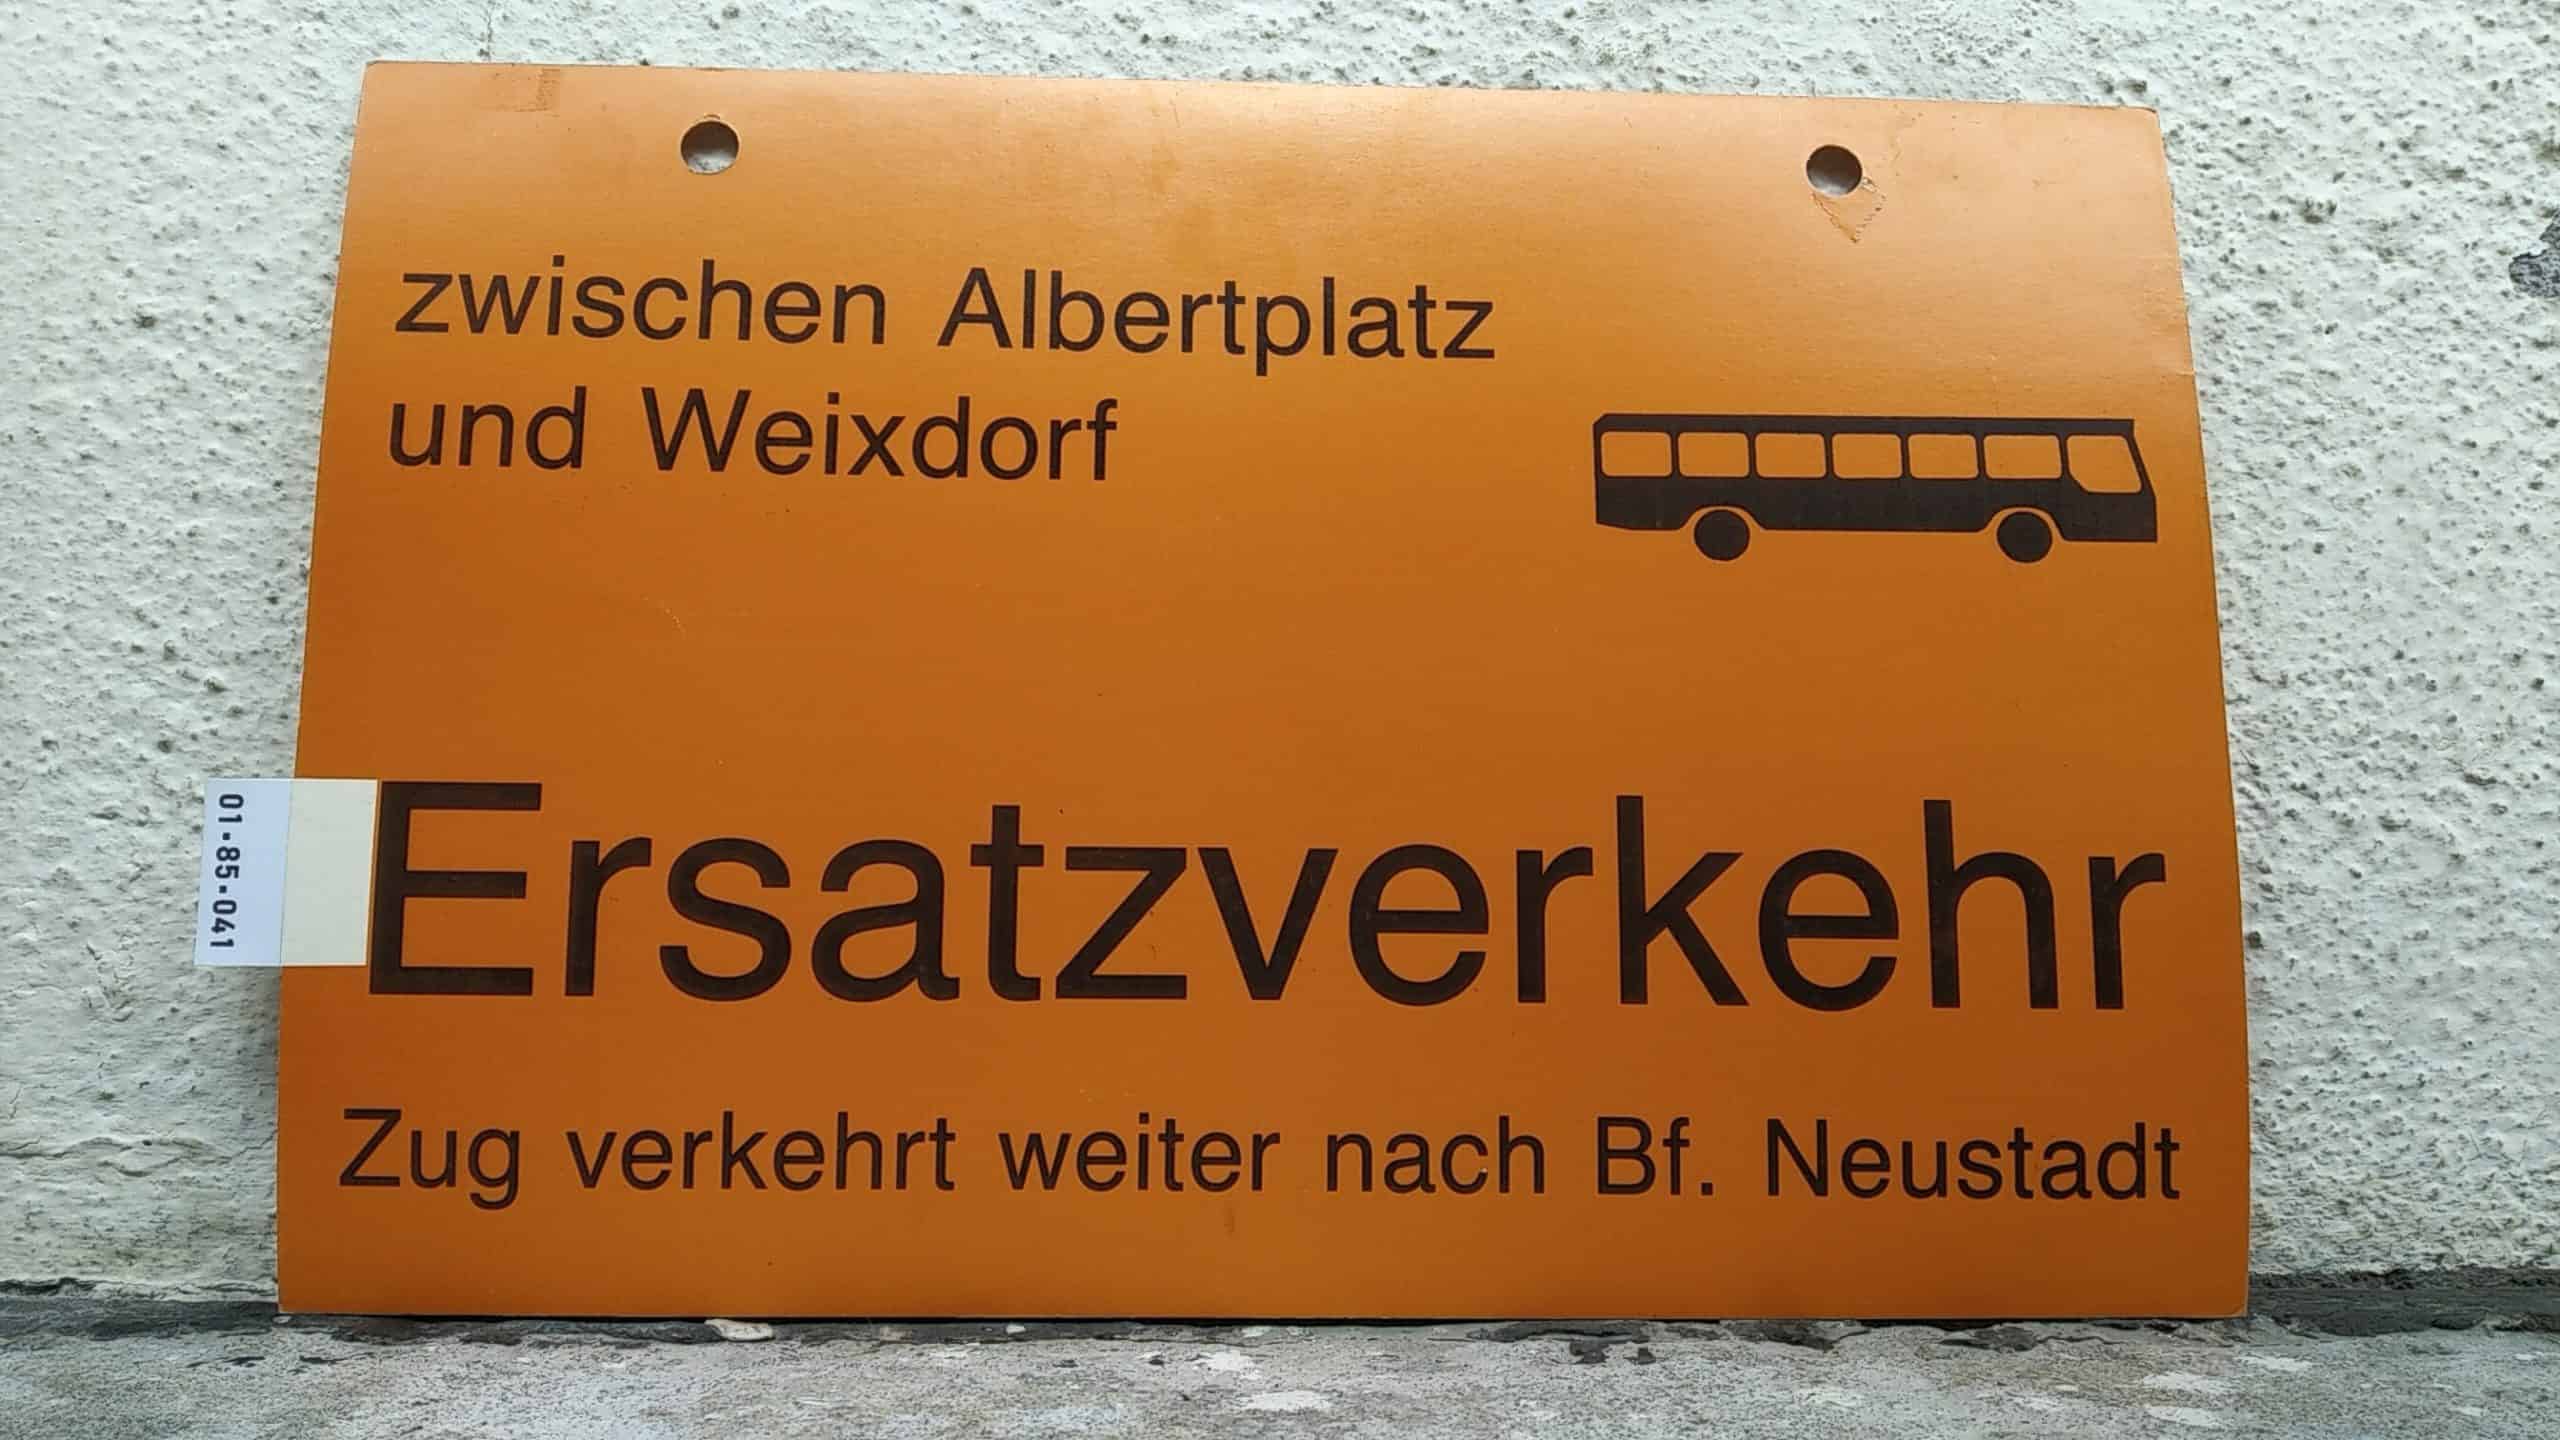 Ein seltenes Straßenbahn-Umleitungsschild aus Dresden: zwischen Albertplatz und Weixdorf [Bus neu] Ersatzverkehr Zug verkehrt weiter nach Bf. Neustadt